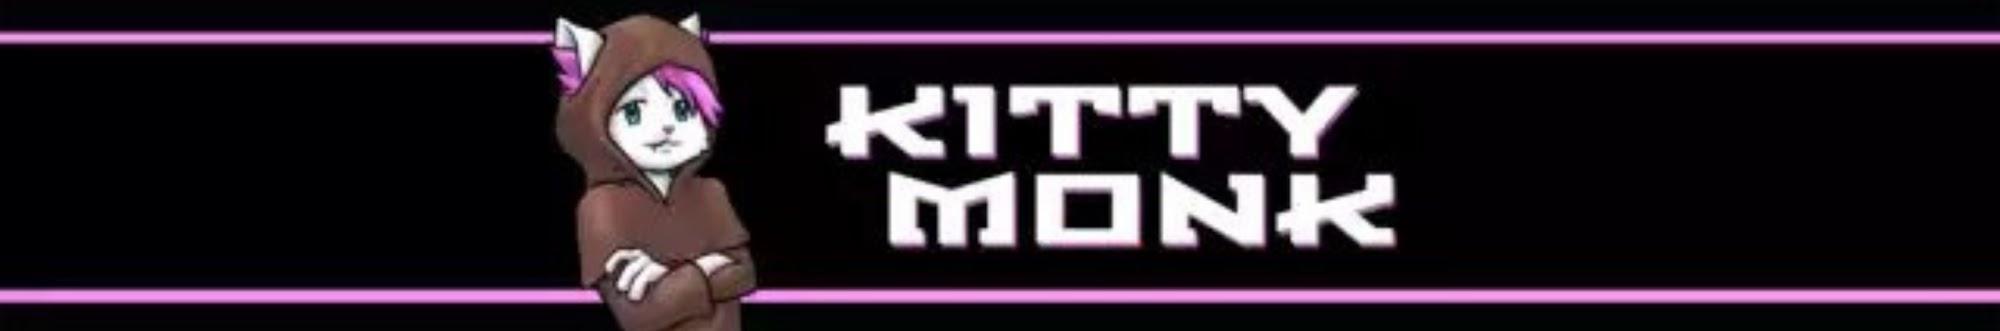 Kitty Monk